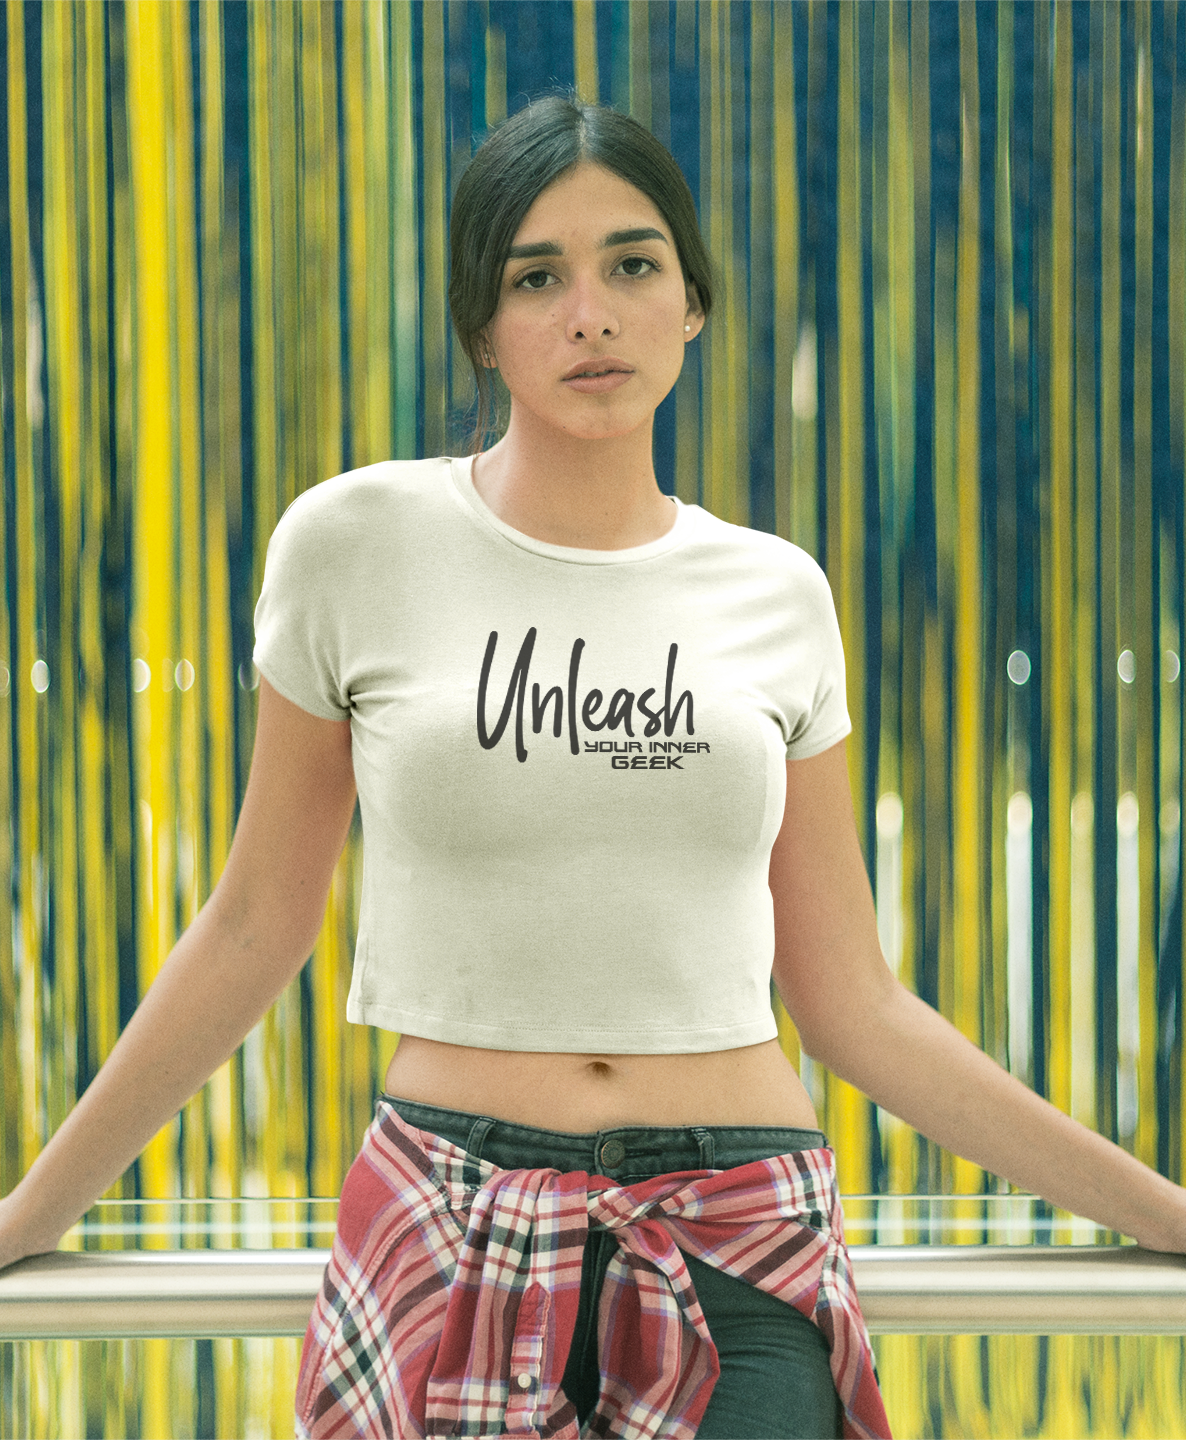 GU Brand Women's 'Unleash' Crop Top